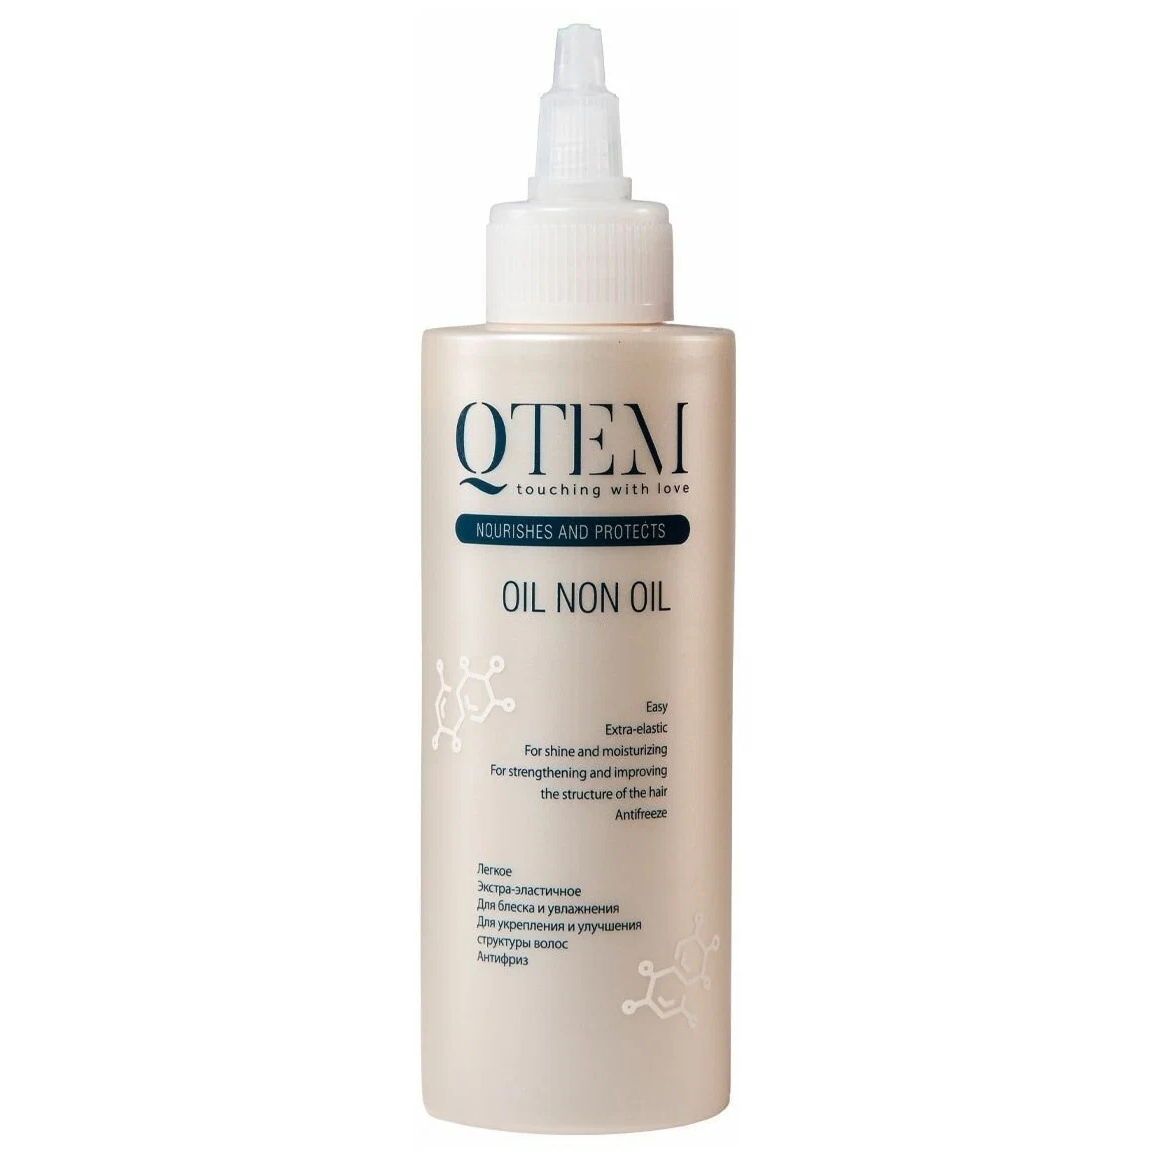 Масло для волос QTEM Oil Non Oil для ухода и укладки, 150 мл qtem холодный филлер для волос 15 мл